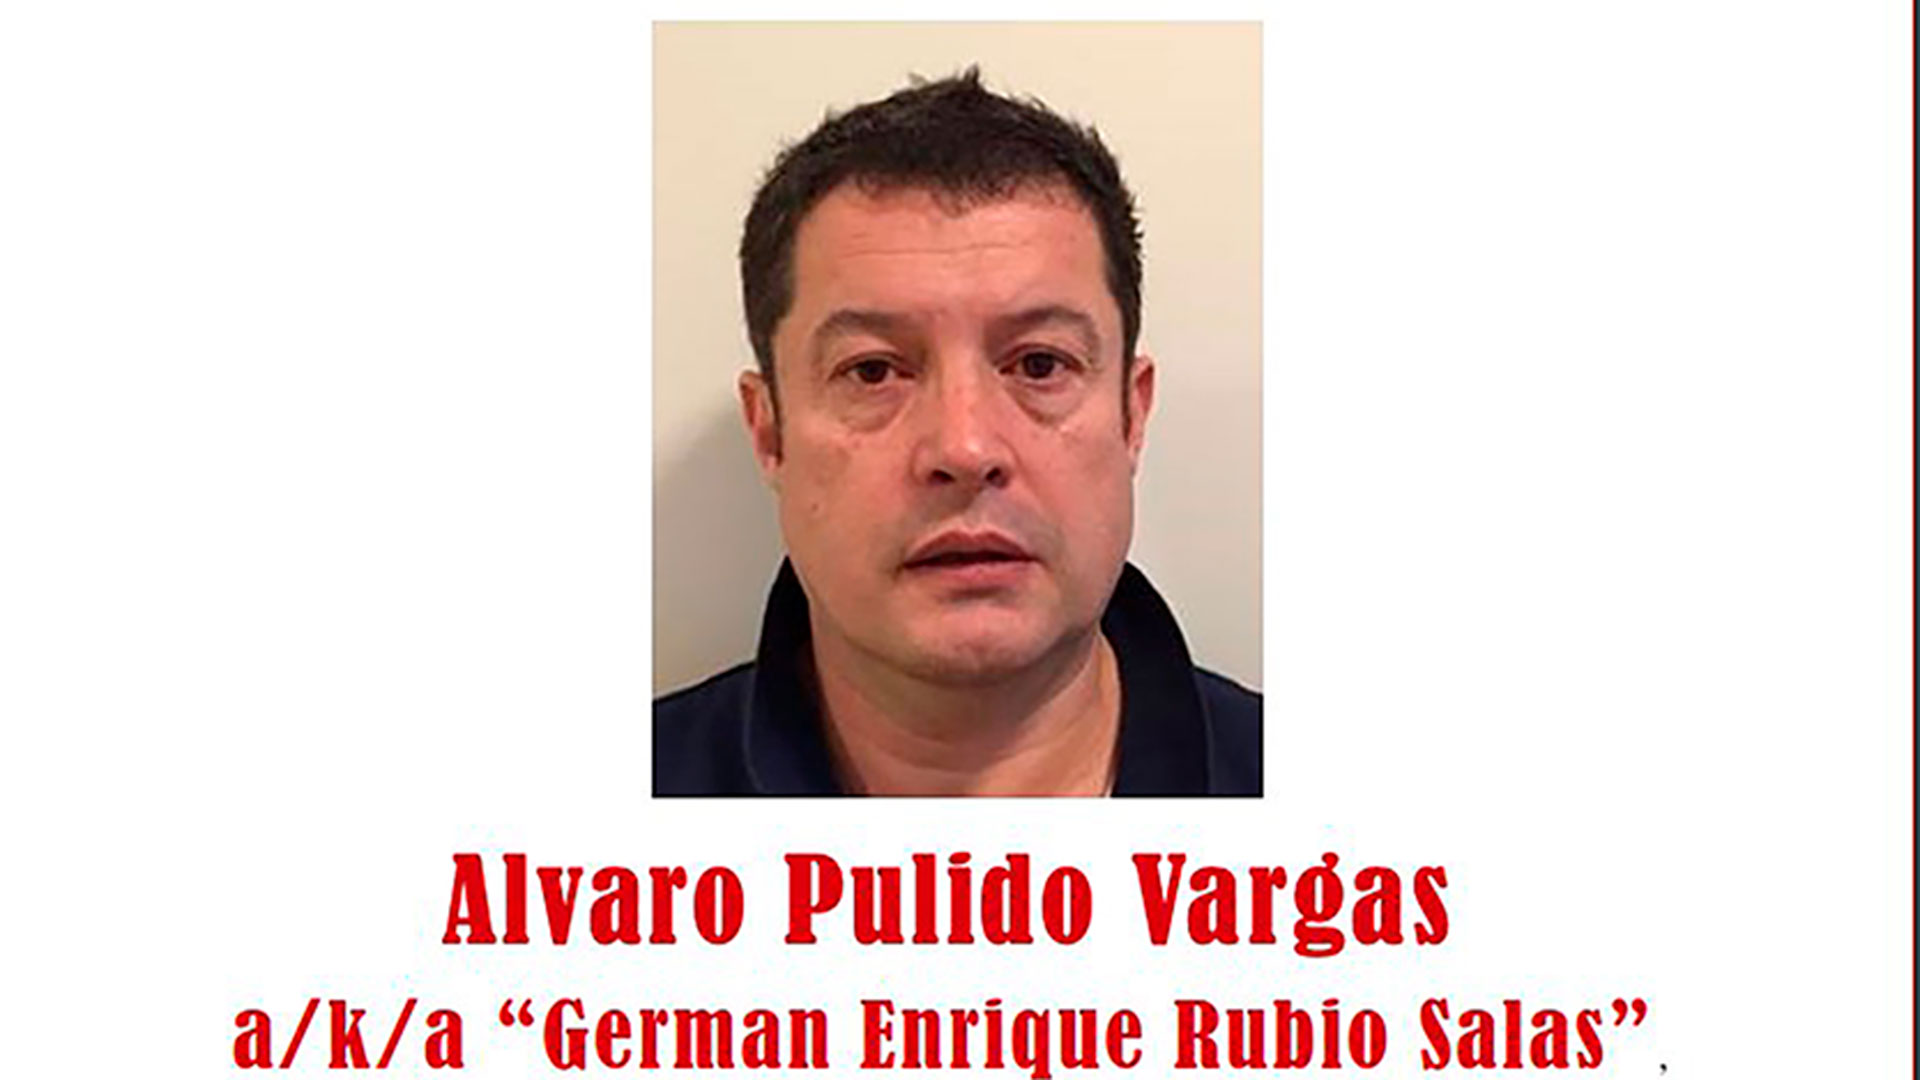 Quién es Álvaro Pulido, el socio colombiano de Alex Saab que fue detenido por el régimen de Maduro en Venezuela acusado de corrupción